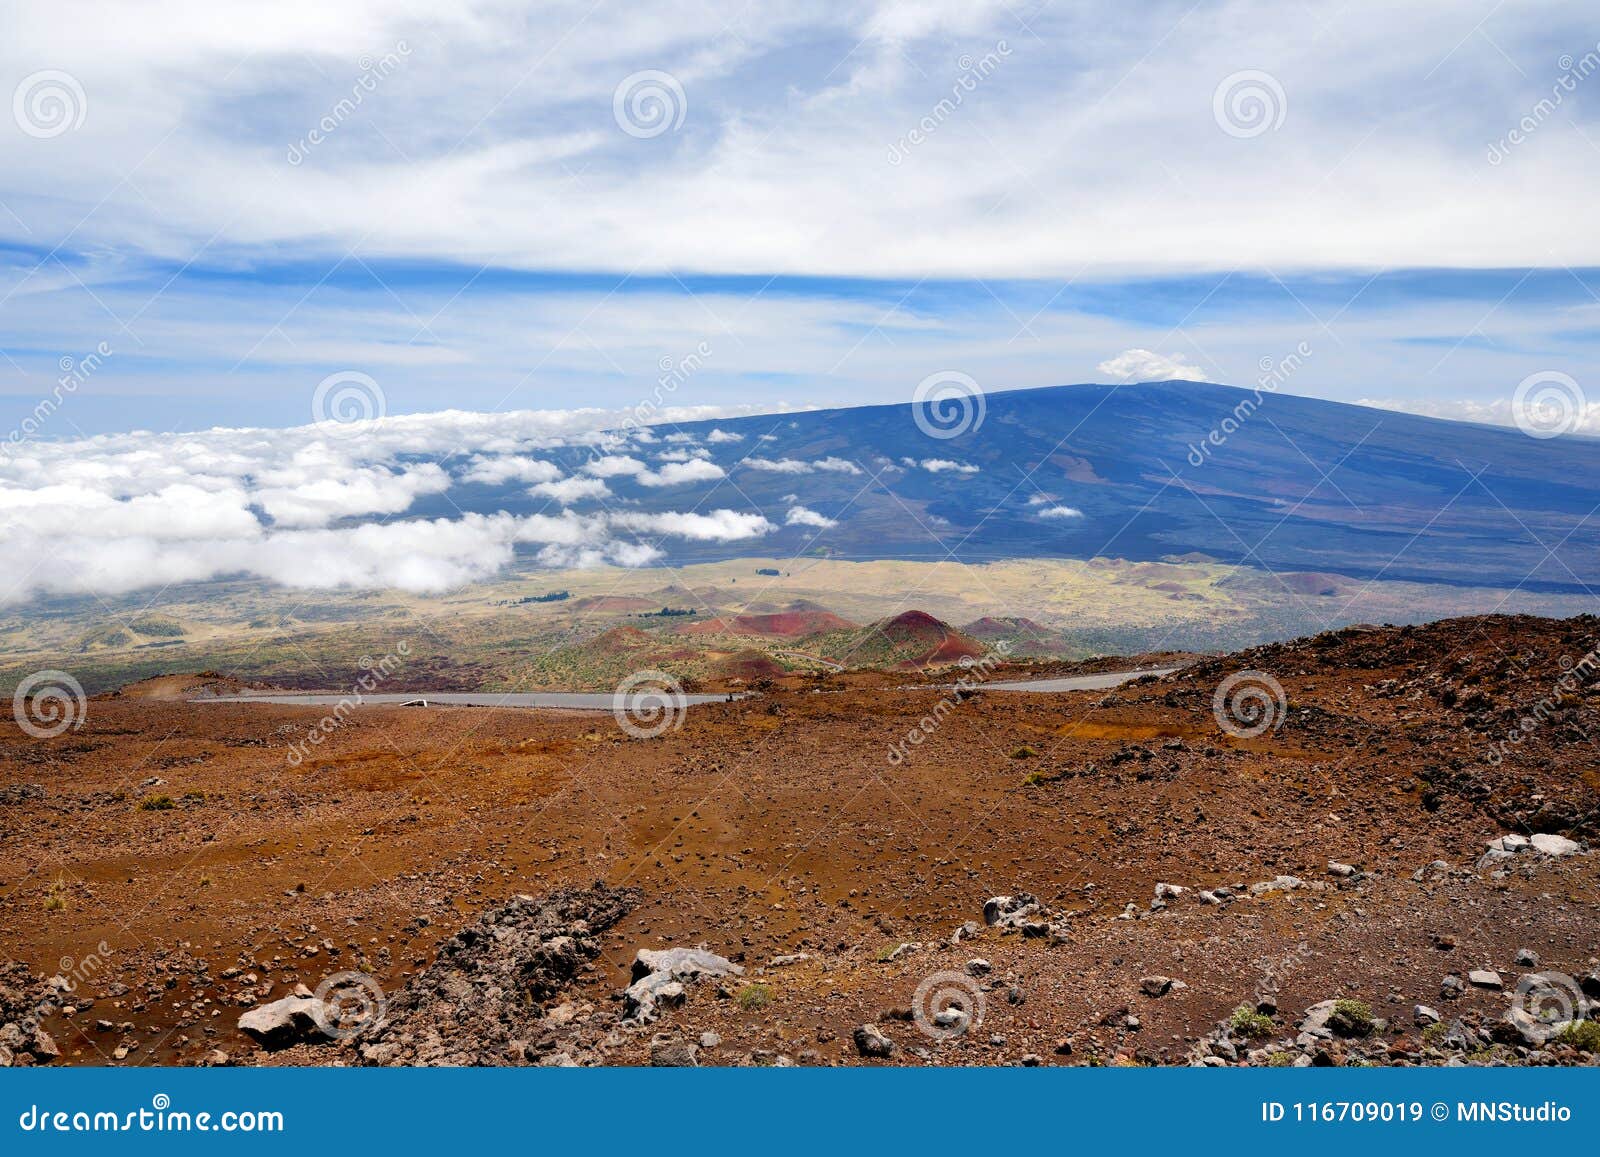 breathtaking view of mauna loa volcano on the big island of hawaii